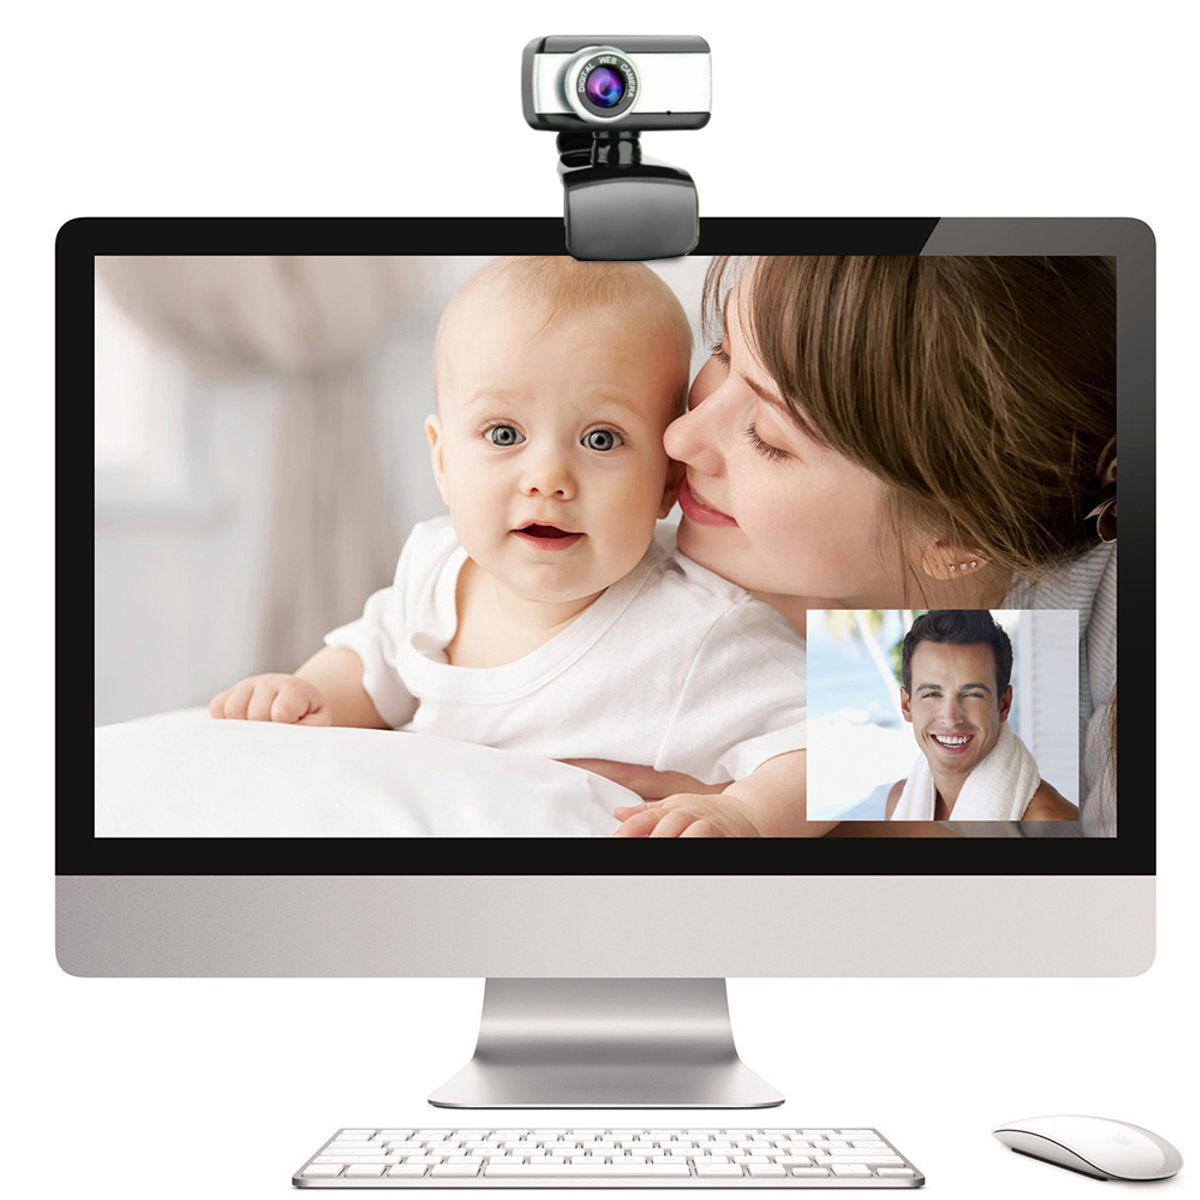 720P-HD-Webcam-CMOS-50-Mega-Pixels-USB20-Web-Camera-Built-in-Microphone-Camera-for-Desktop-Computer--1769965-9